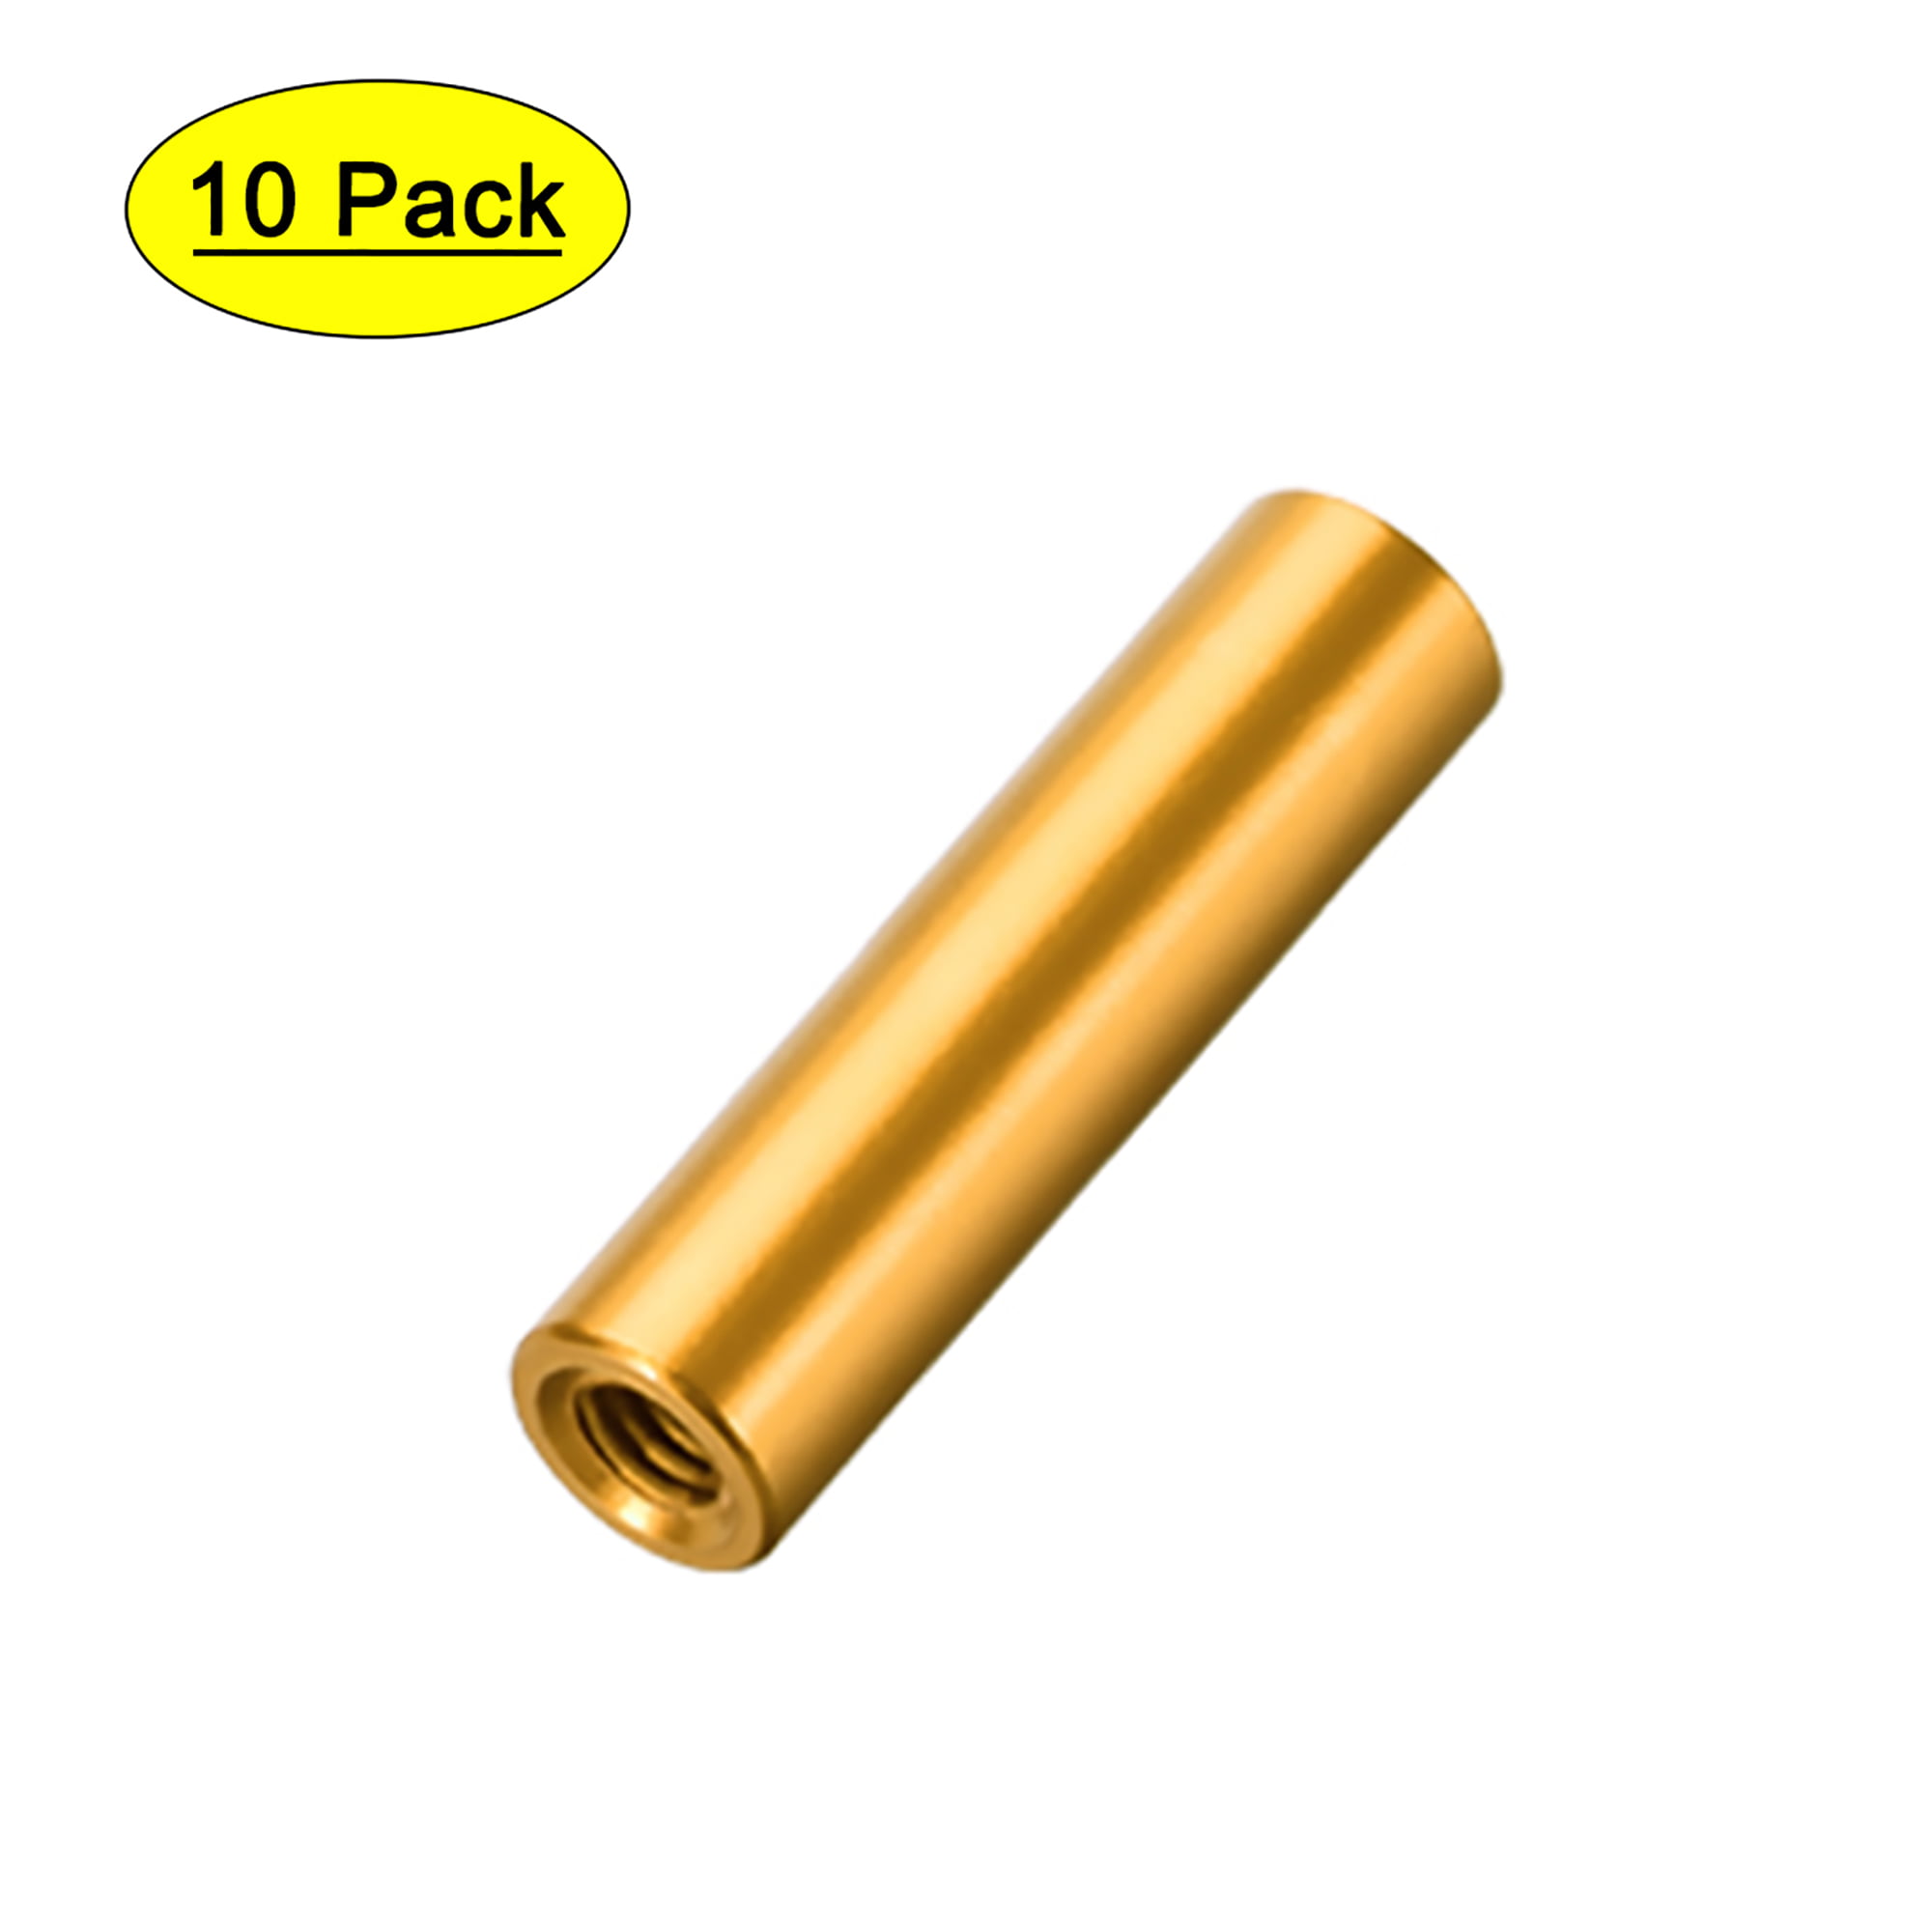 10 Pcs M3x20mm Round Aluminum Standoff Column Spacer Female Golden Tone for DIY 